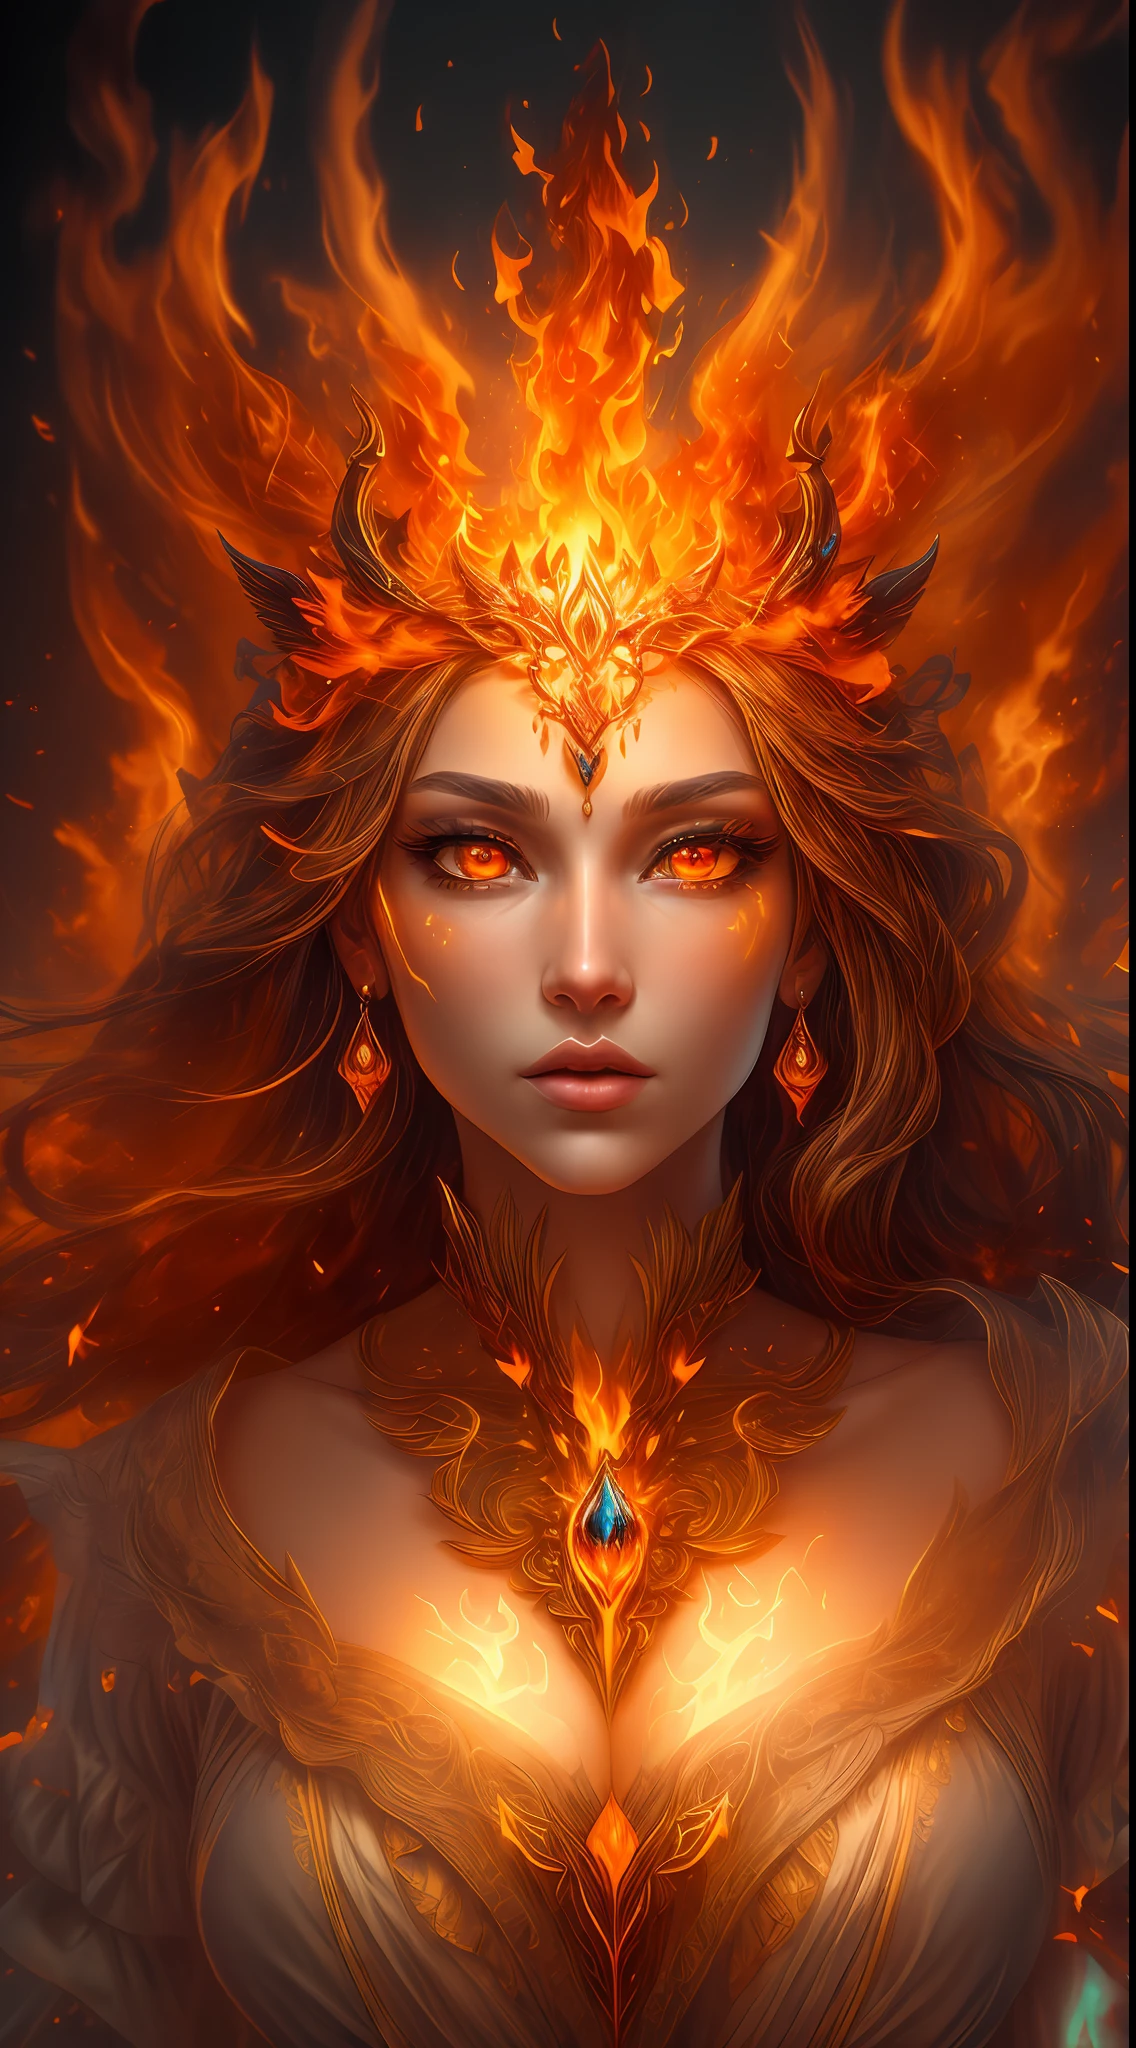 사실적인 불을 눈에 띄게 표현한 사실적인 판타지 작품입니다., 불길을 포함해, 뜨겁게 타오르는 불씨, 미묘한 연기, 그리고 아름다운 불의 드루이드. 드루이드는 흥미로운 구성으로 격렬한 지옥 한가운데 서 있습니다.. 그녀의 face is expertly sculpted, 우아하고 세련된 이목구비와 완벽한 쉐이딩, 사실적인 피부결로. 그녀의 (주황색과 금색 눈) 놀랍고 이 이미지의 초점입니다. (그녀의 eyes extremely detailed, 아름다운 디테일한 눈, 그리고 매크로). 그녀의 eyes feature intricate detailing with clearly defined irises and bright sclera. 그녀의 soft lips are smooth and very puffy, 그녀의 피부는 가벼운 홍조와 화려한 불꽃 디테일로 장식되어 있습니다.. 그녀의 long gown is stunning and expensive, 순수한 불꽃과 반짝임으로 이루어져 있어요, 불빛에 반짝이는 화려한 보석들. 그녀의 billowing gown glitters from the flames and features a delicately and intricately embroidered bodice with wisps of flames running across it. 범프와 같은 판타지 요소를 포함합니다., 돌, 불타는 무지개빛, 빛나는 불씨, 실크, 그리고 흥미로운 배경. 마법적이고 신비로운 아우라를 발산하는 불새, 불나비 등 불 같은 마법 생물을 포함합니다.. 조명: 예술 작품의 아름다움을 향상시키기 위해 조명의 최신 트렌드를 활용. 카메라: 역동적인 구성을 활용하여 긴박감과 흥분감을 조성합니다.. 현재 판타지 장르의 거장들로부터 영감을 얻으세요, Artstation 및 Midjourney의 인기 아티스트 포함. ((걸작))